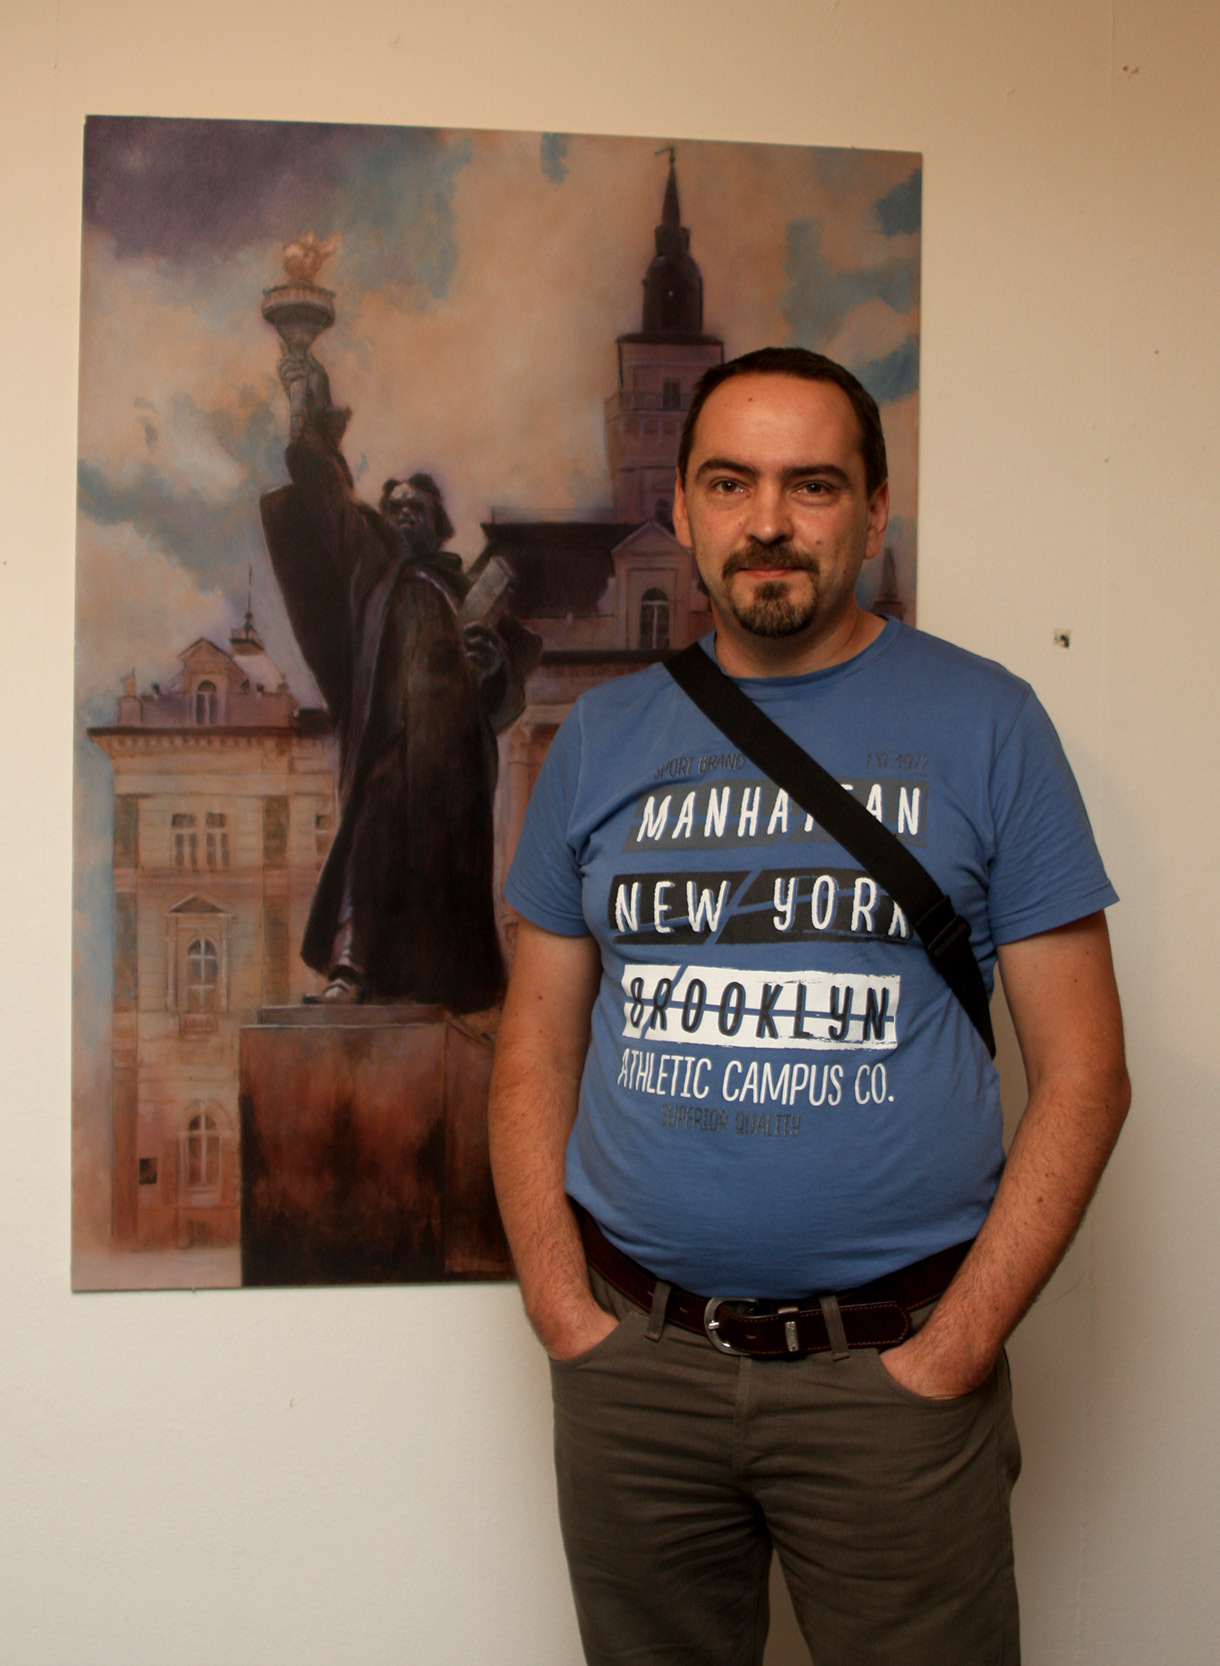 Umetnik Darko Topalski u "Muzeju Savremene Umetnosti", Novi Sad, Srbija, pored svoje slike "Sloboda na Trgu Slobode"